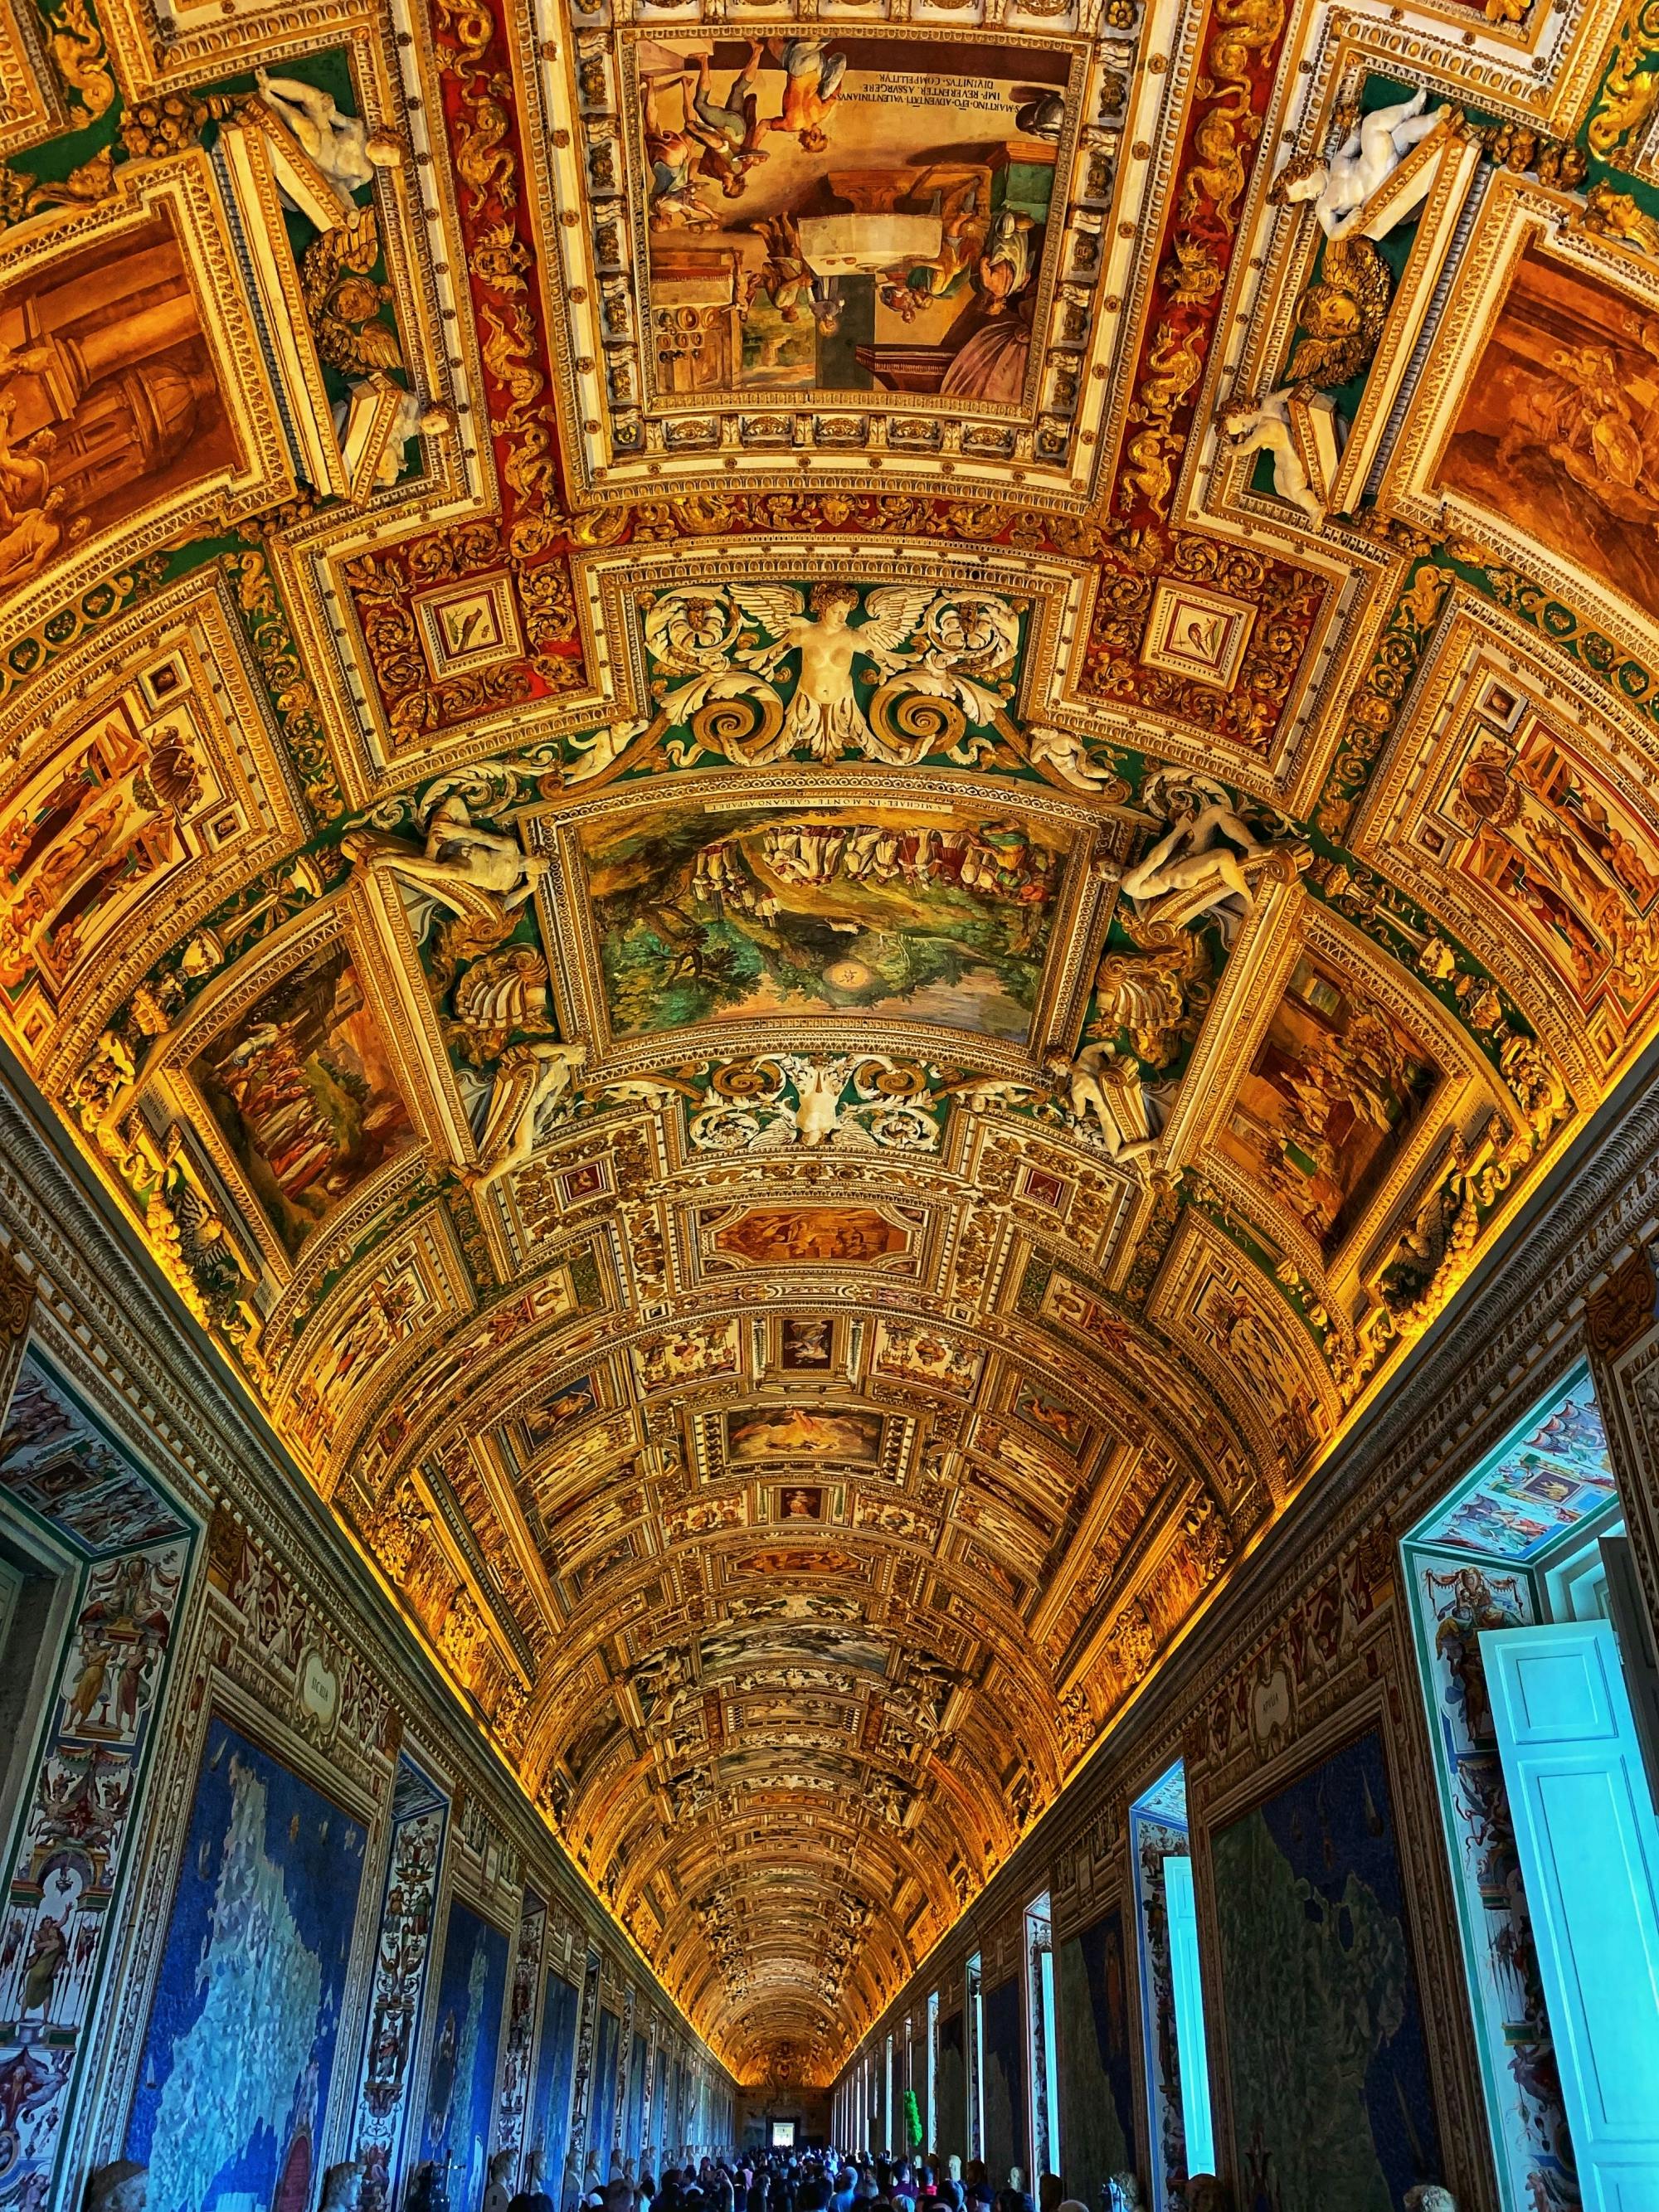 Colazione e Biglietti per i Musei Vaticani e Cappella Sistina